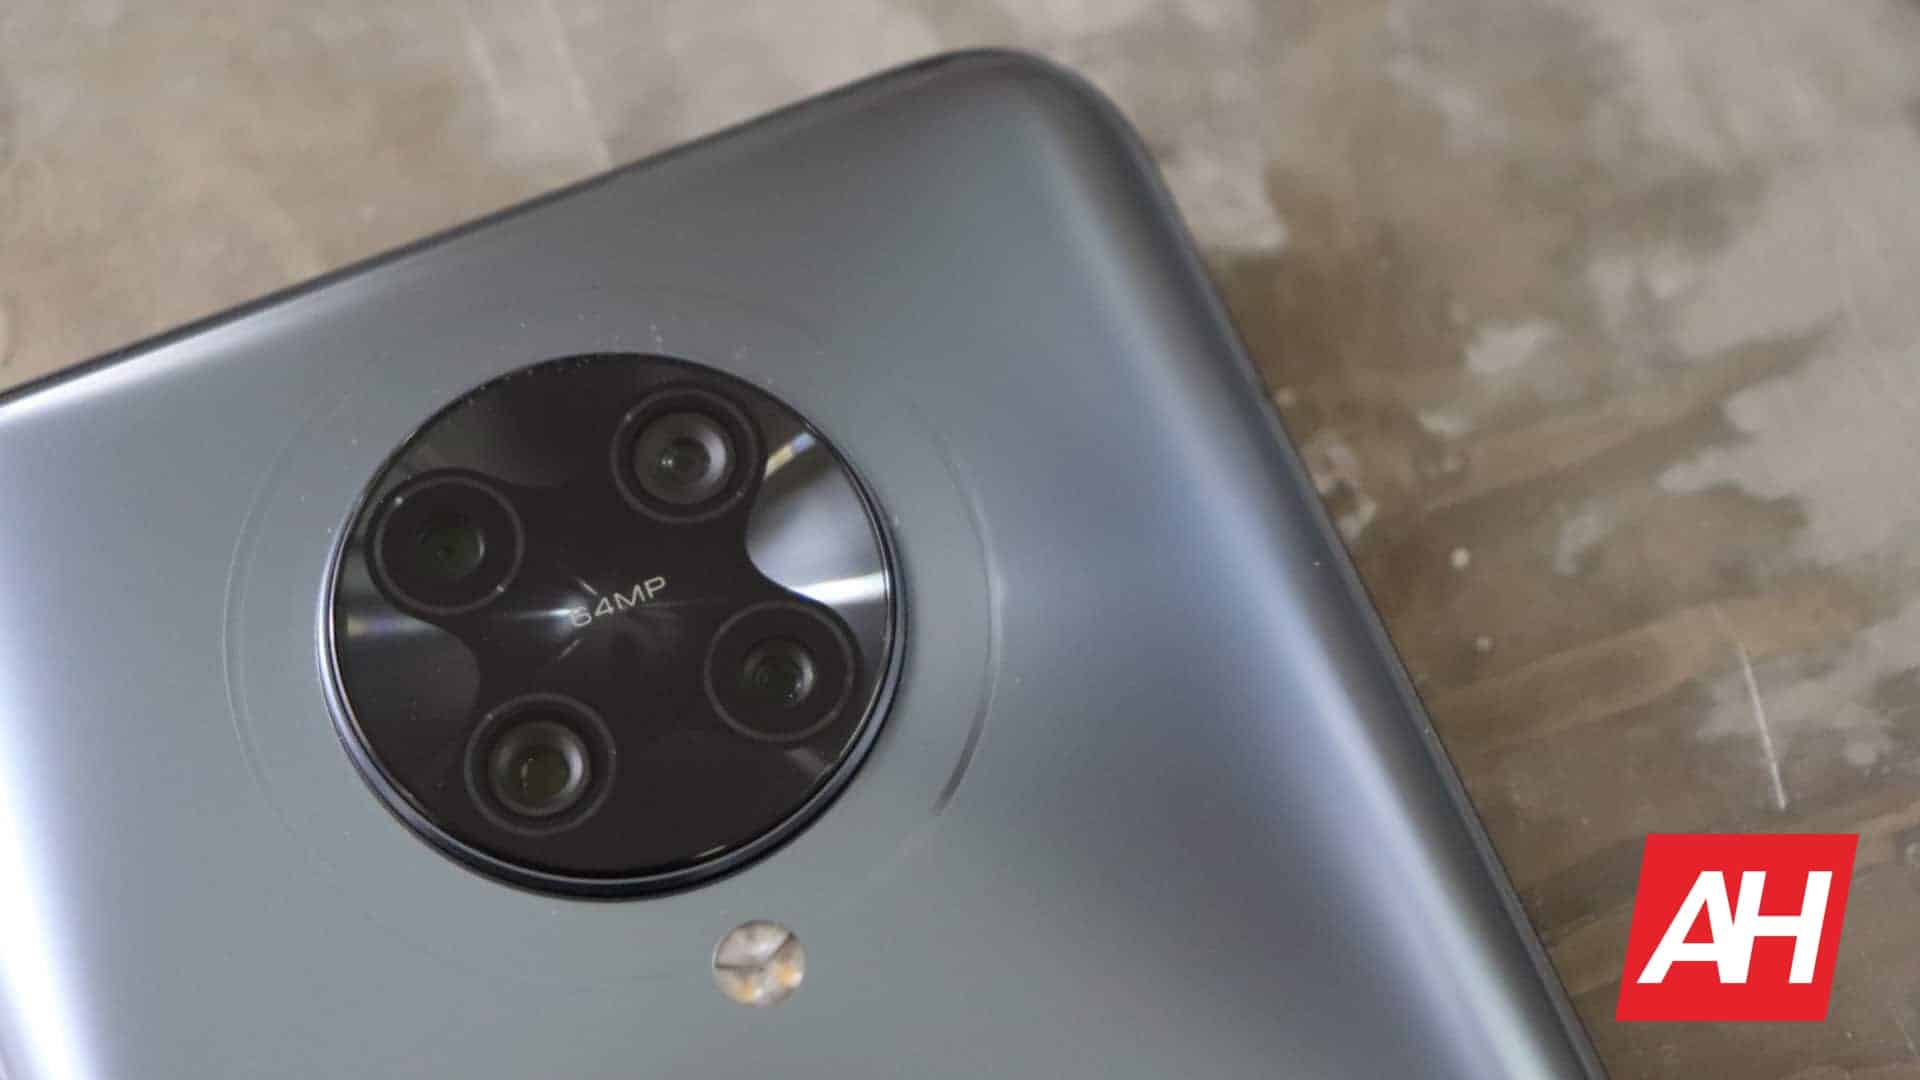 Смартфоны с четырьмя камерами сохраняют поставки датчика изображения CMOS